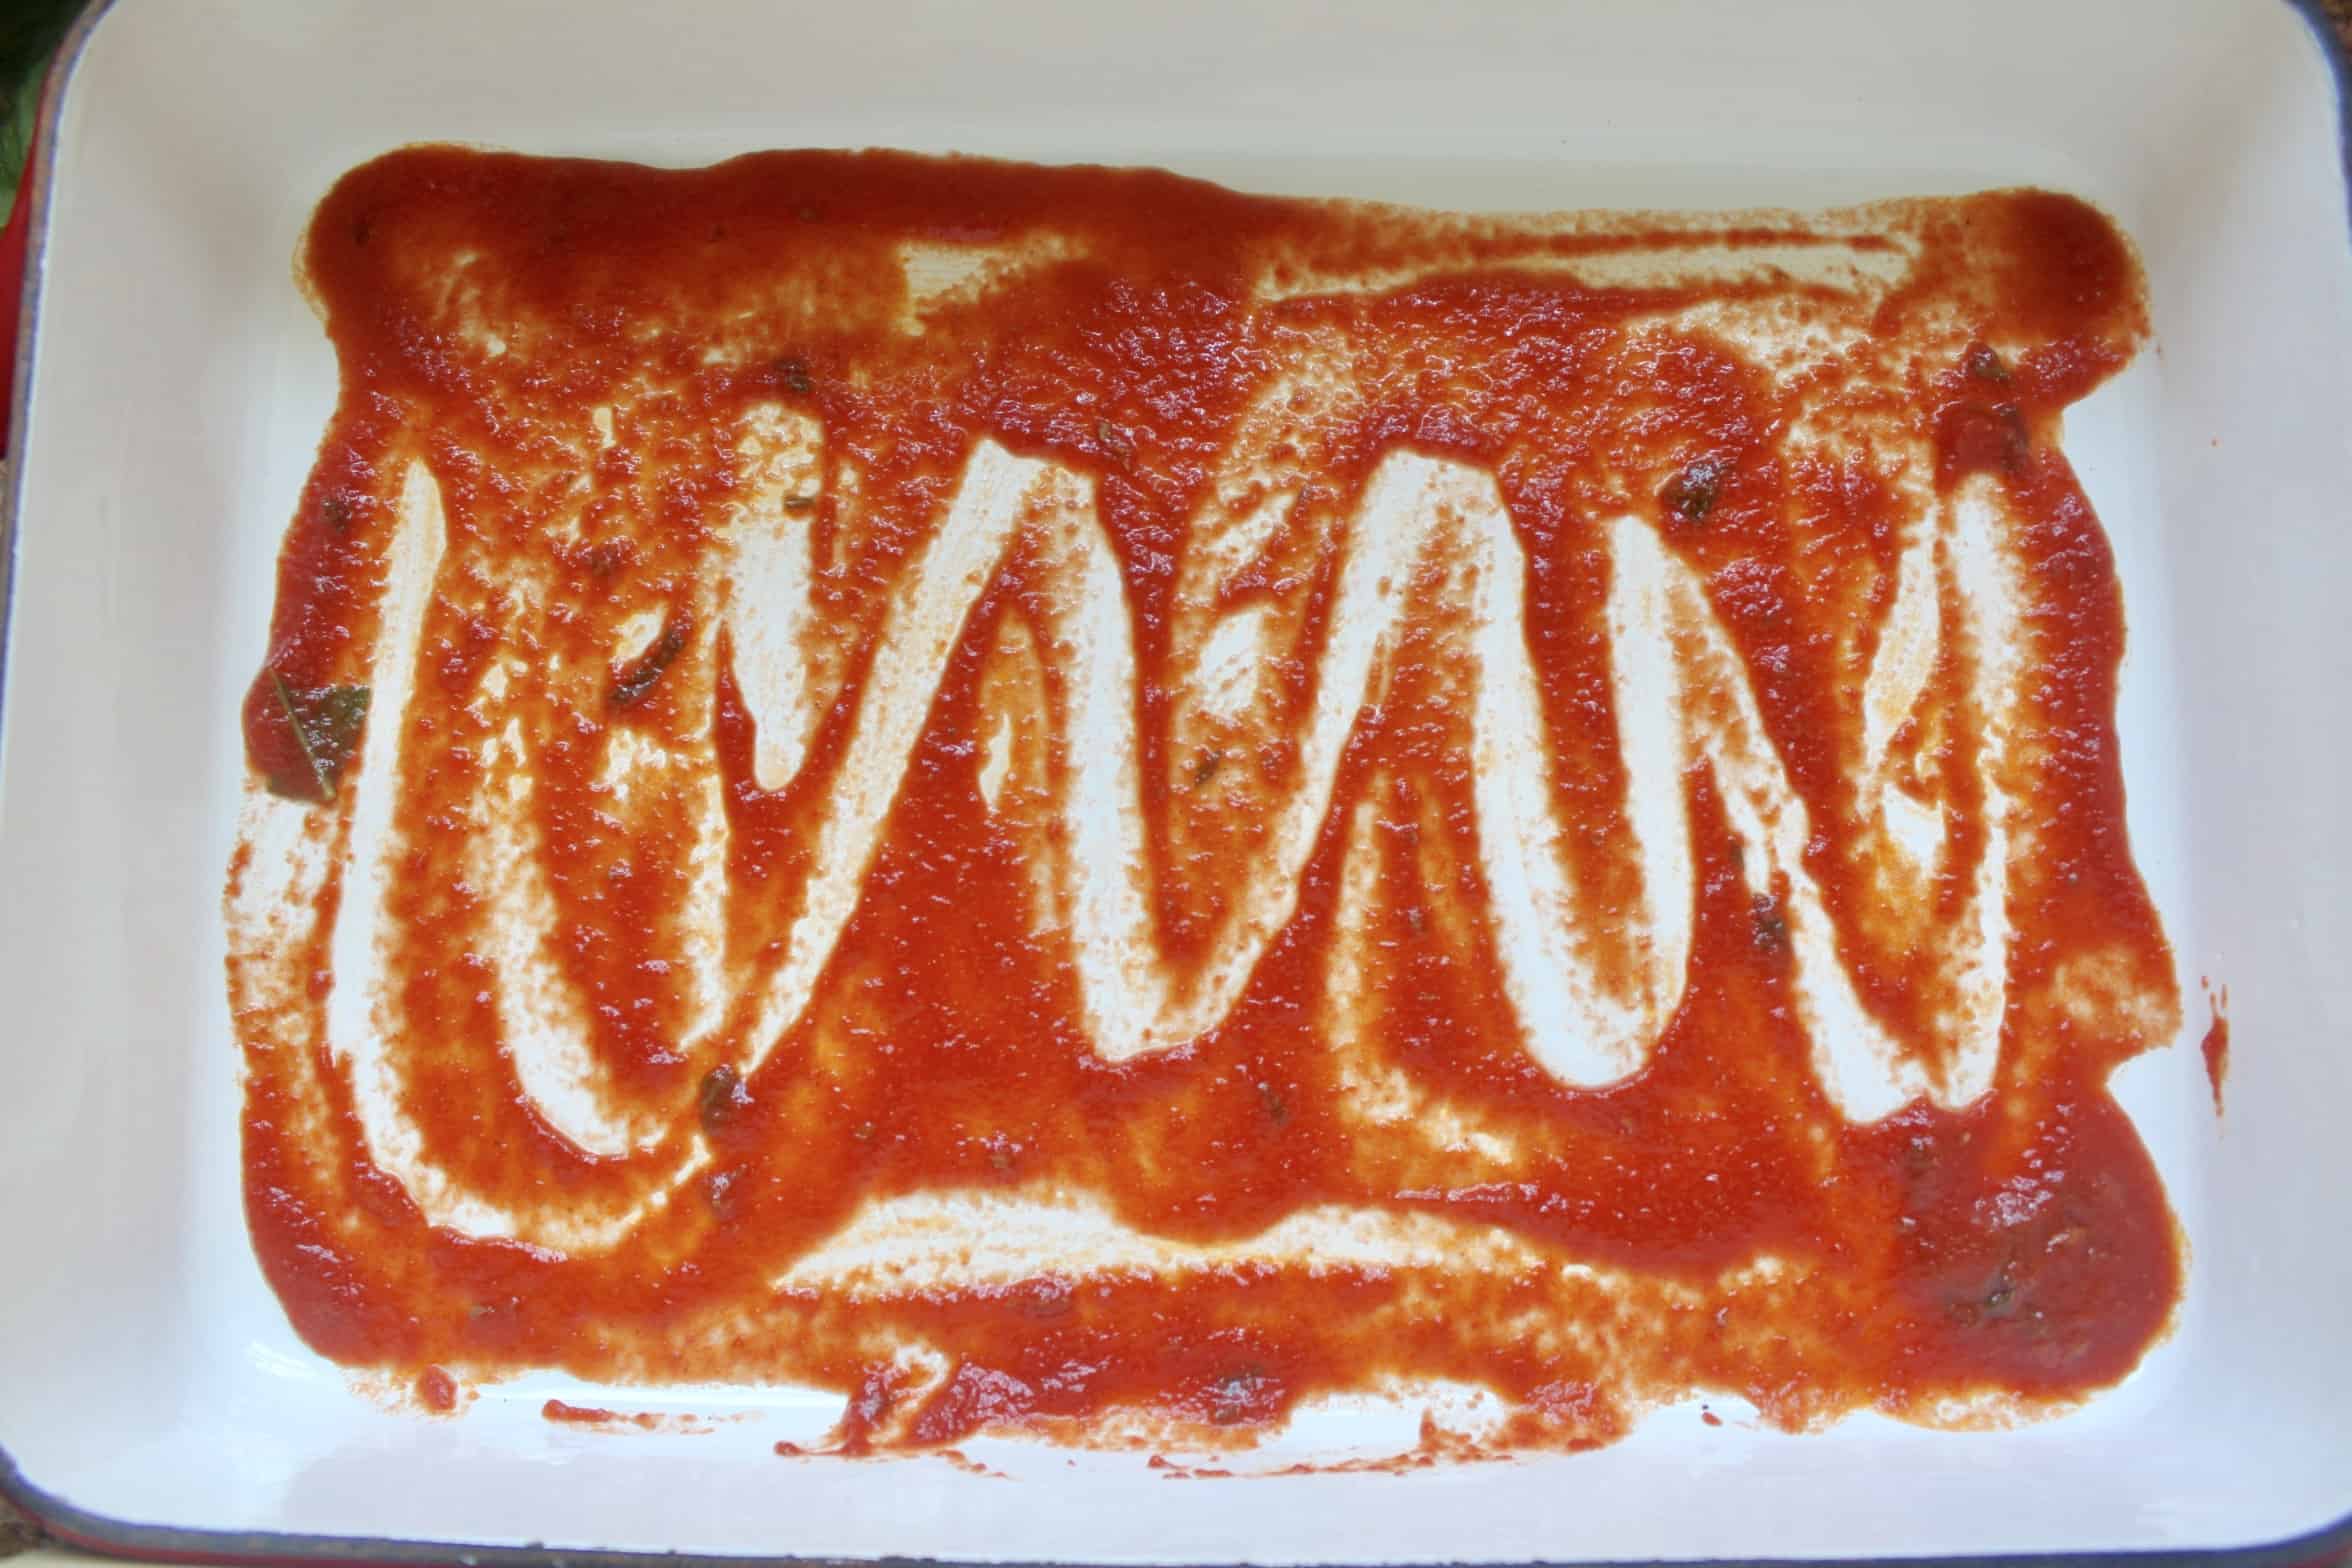 meatless sauce in lasagna pan